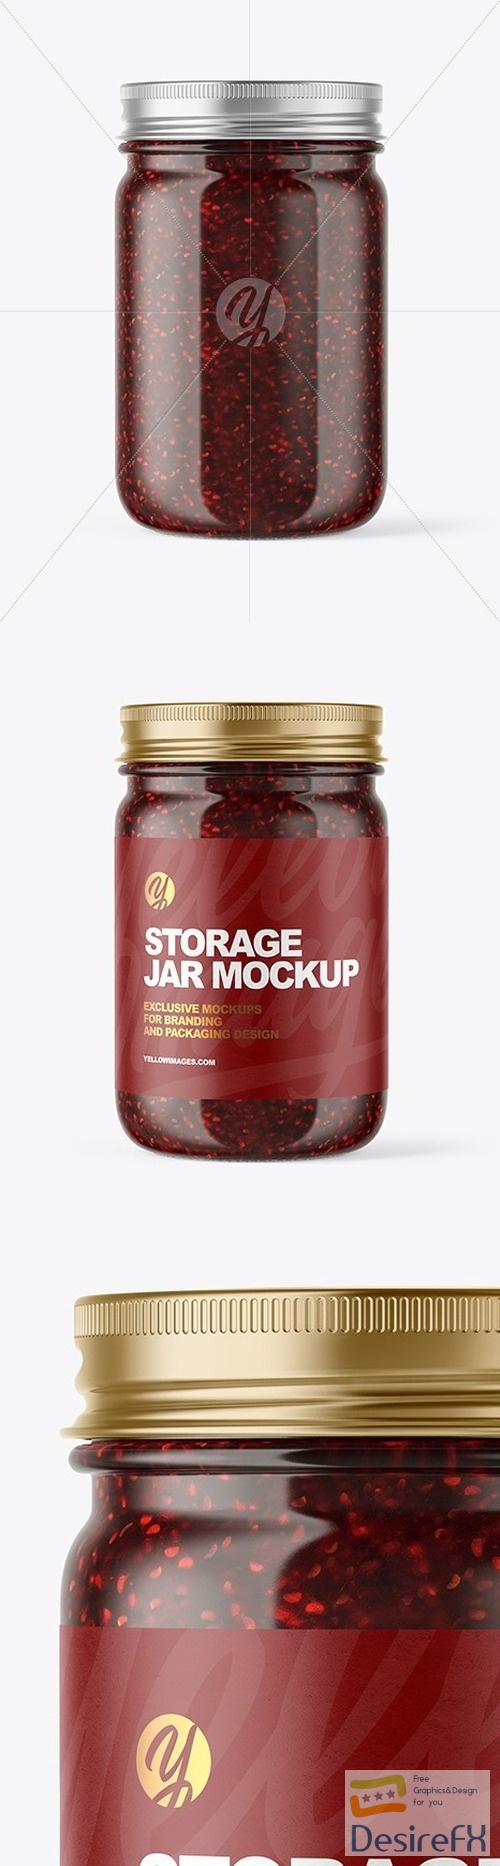 Clear Glass Jar with Raspberry Jam Mockup 51042